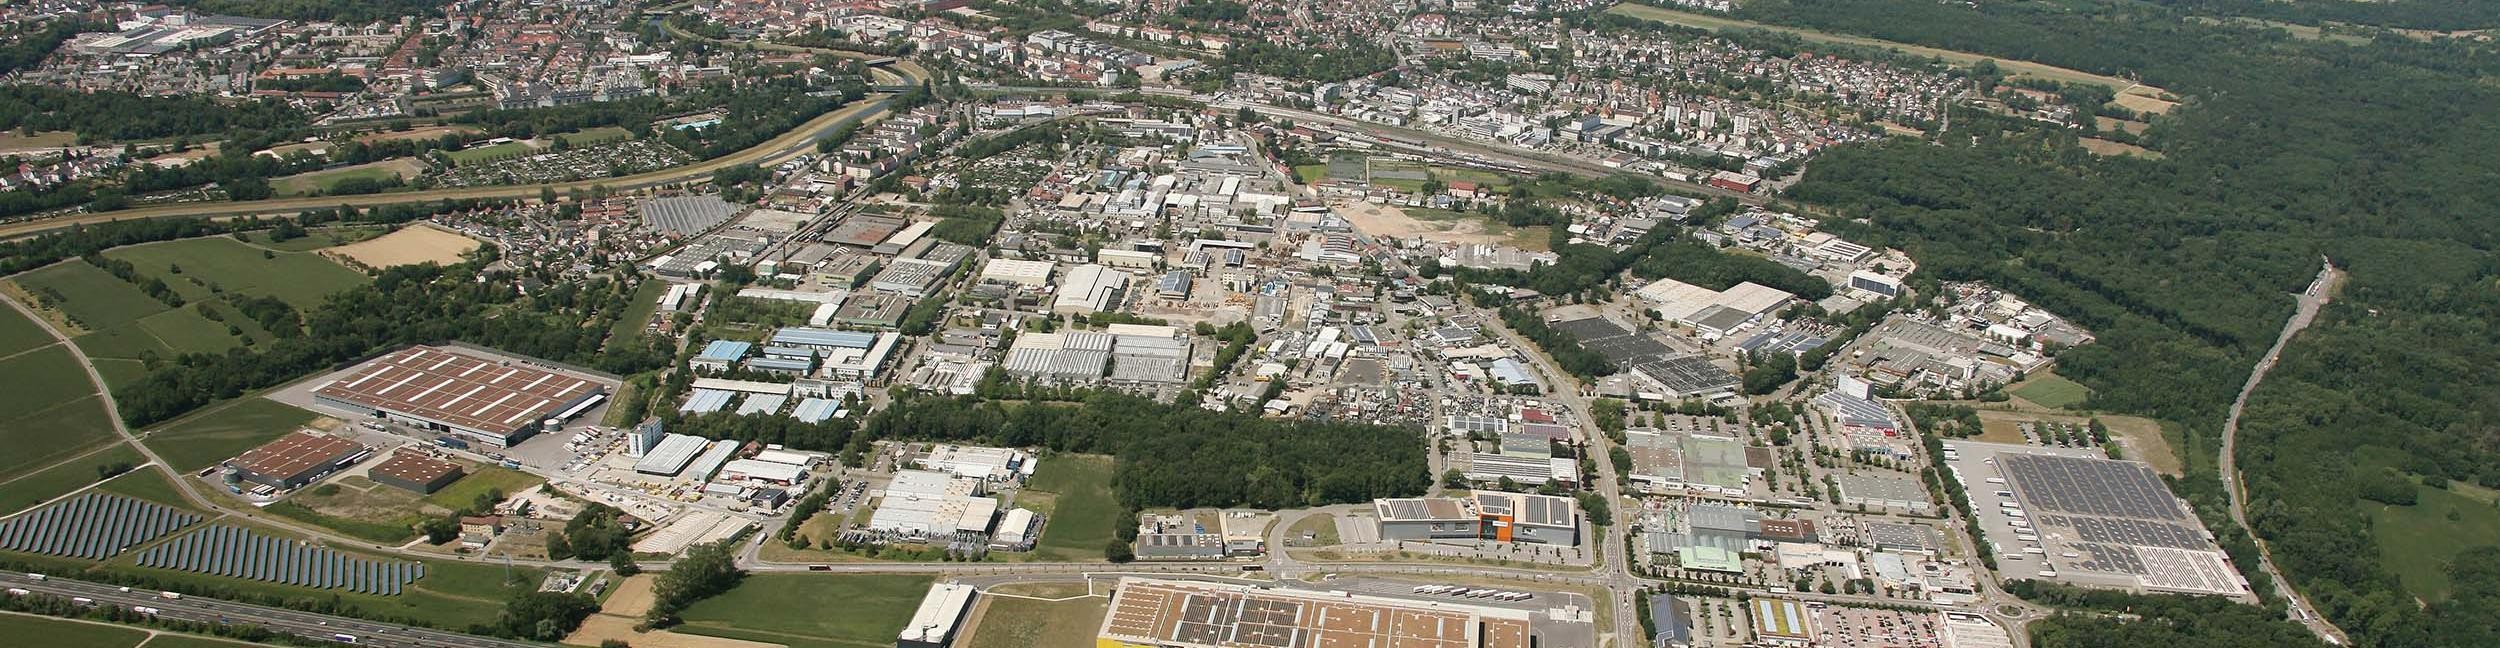 Vue aérienne de la zone industrielle de Rastatt